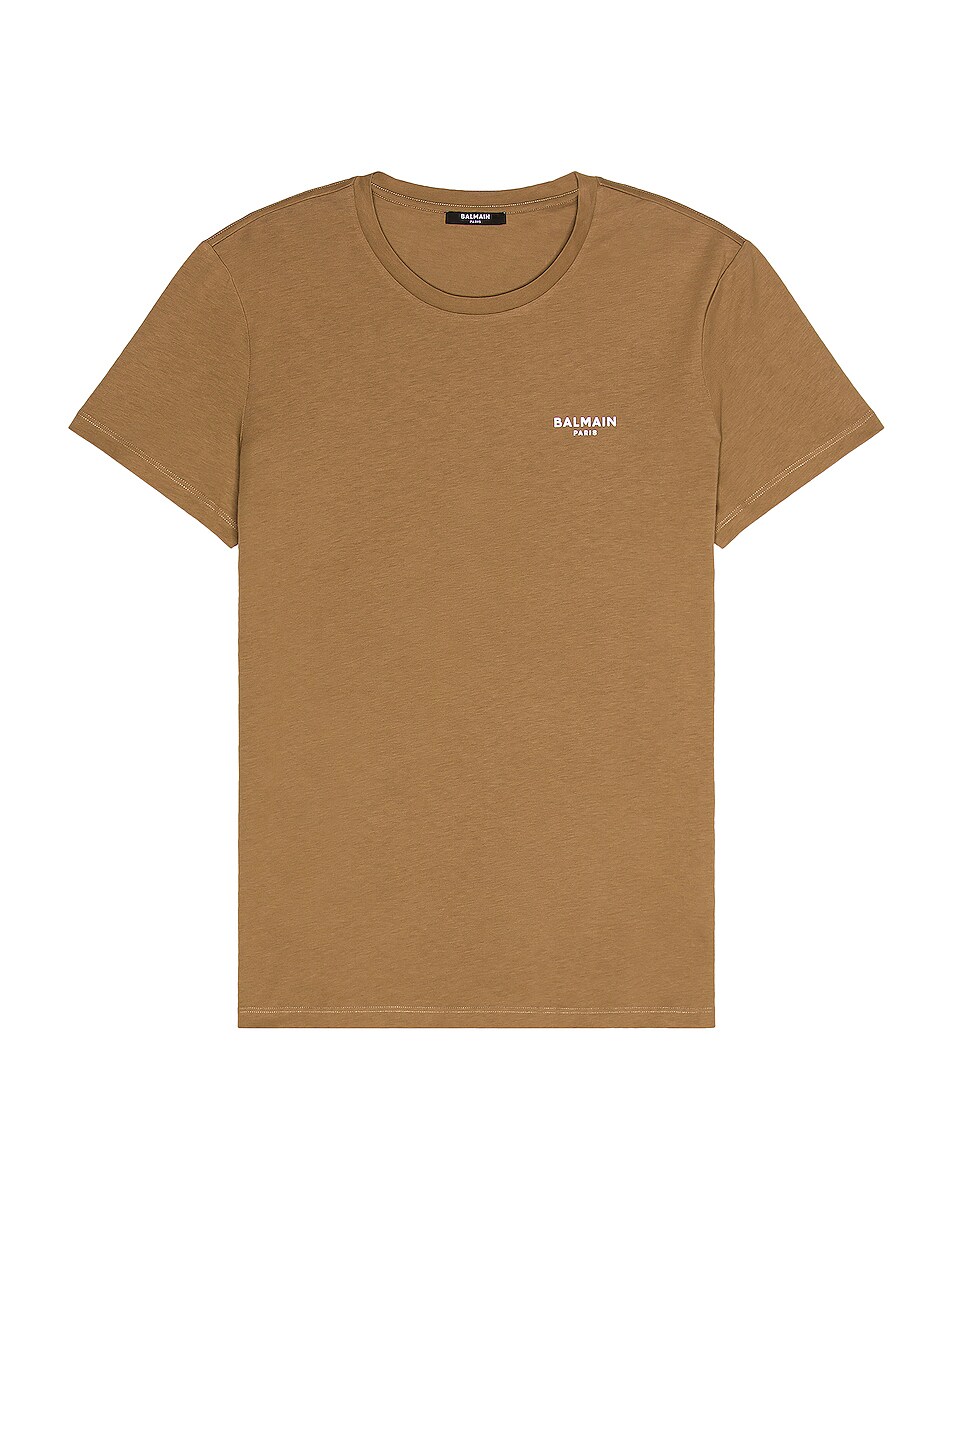 Image 1 of BALMAIN Flock T-Shirt in Taupe & Blanc